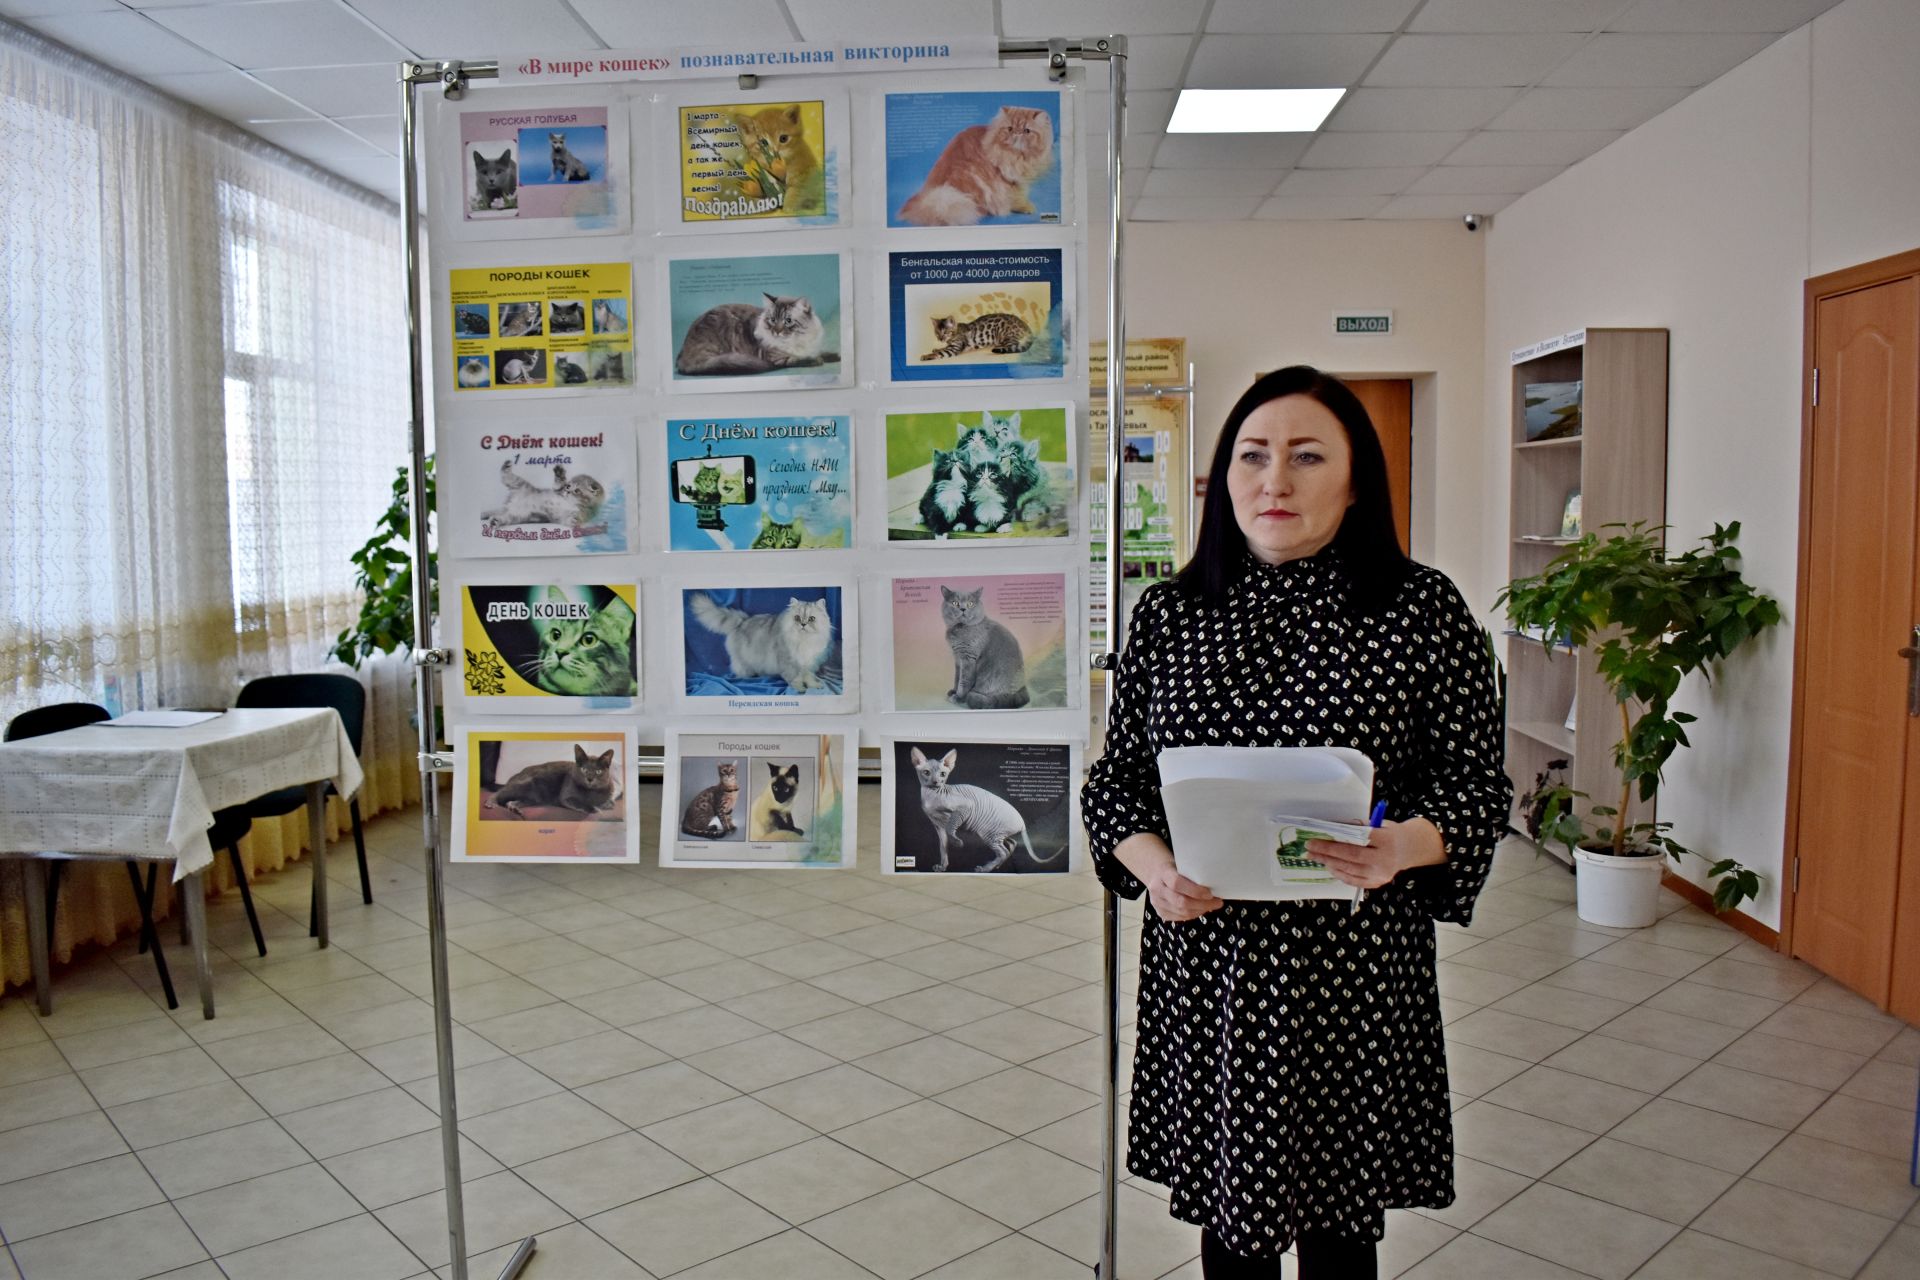 В поселке Татарстан прошла познавательная викторина, посвященная Дню кошек в России